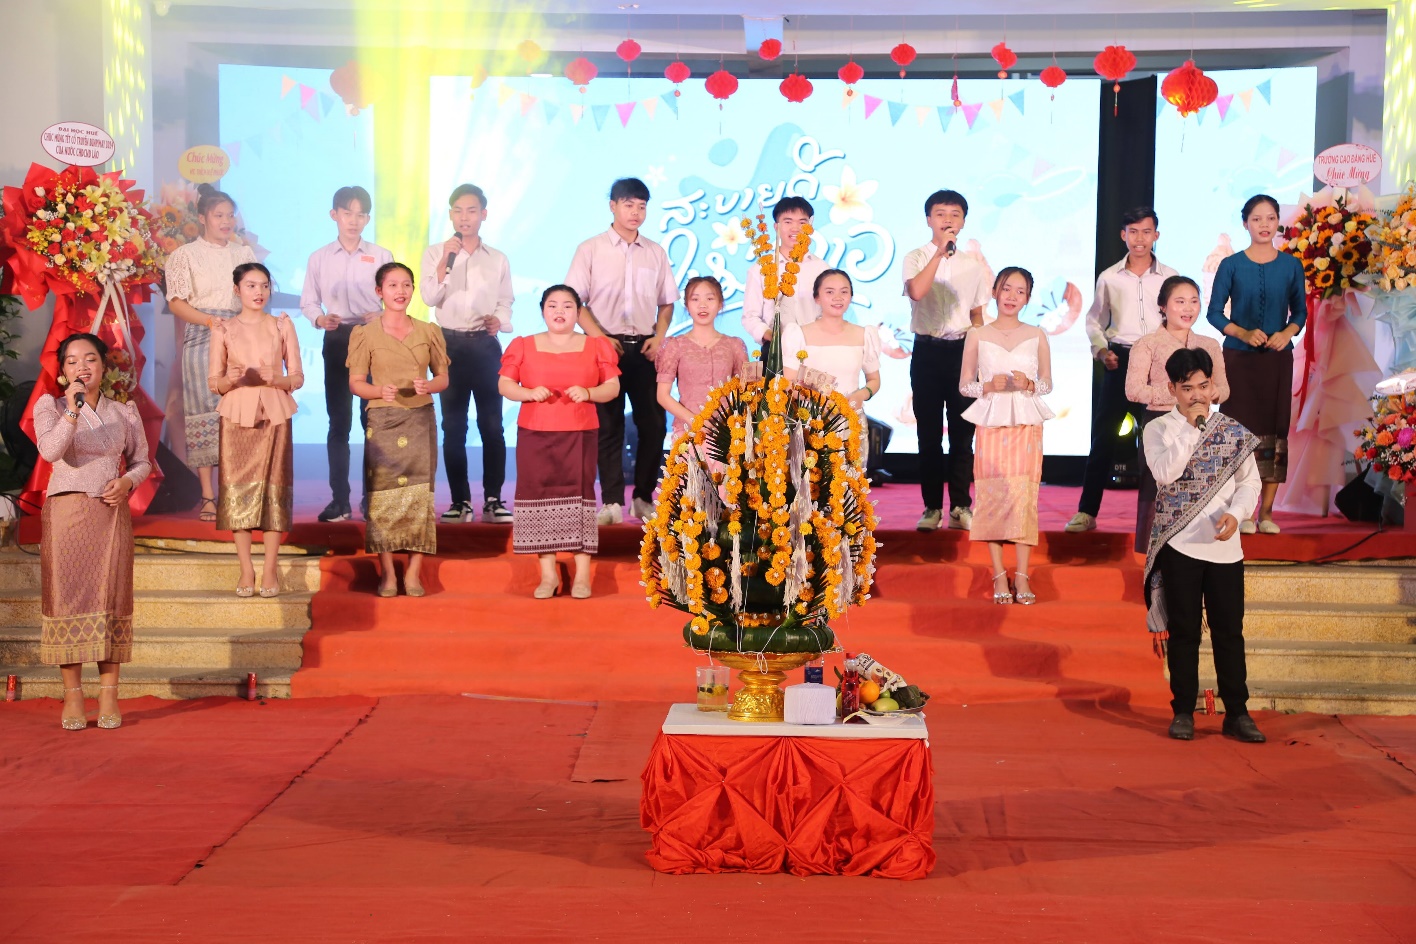 Lưu học sinh Lào đón Tết Bunpimay, buộc chỉ tay chúc nhau sức khỏe, may mắn - 4